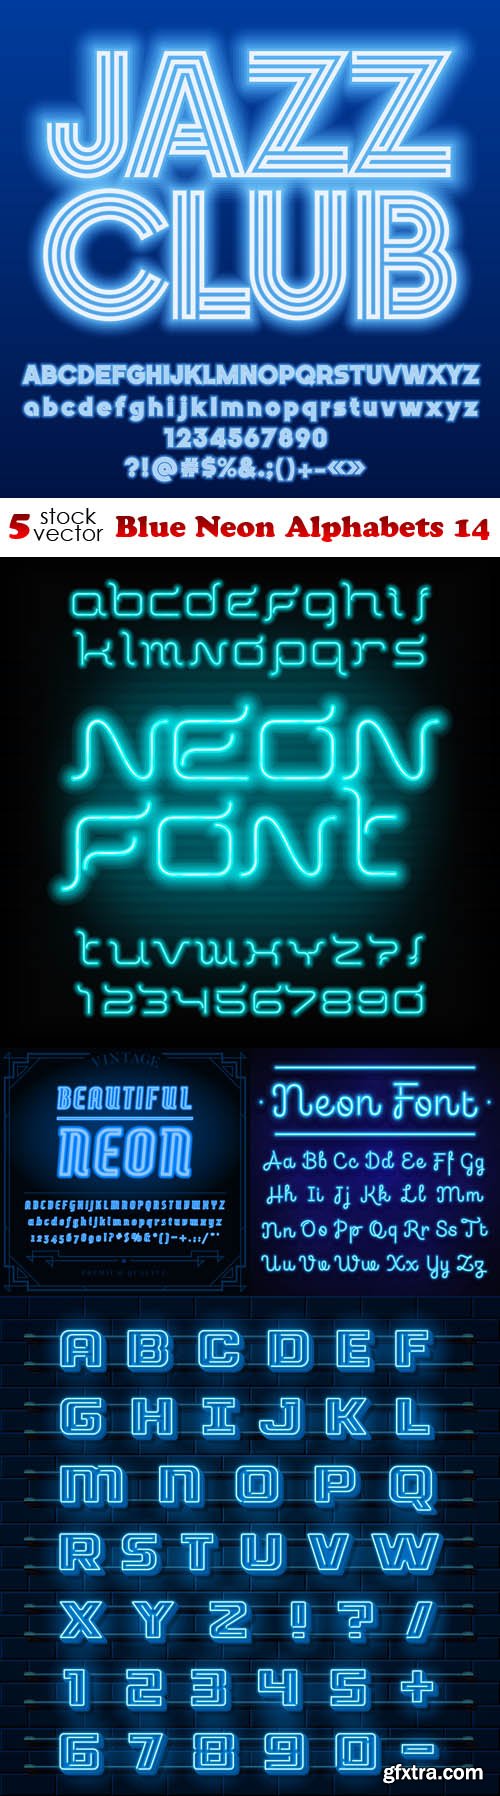 Vectors - Blue Neon Alphabets 14